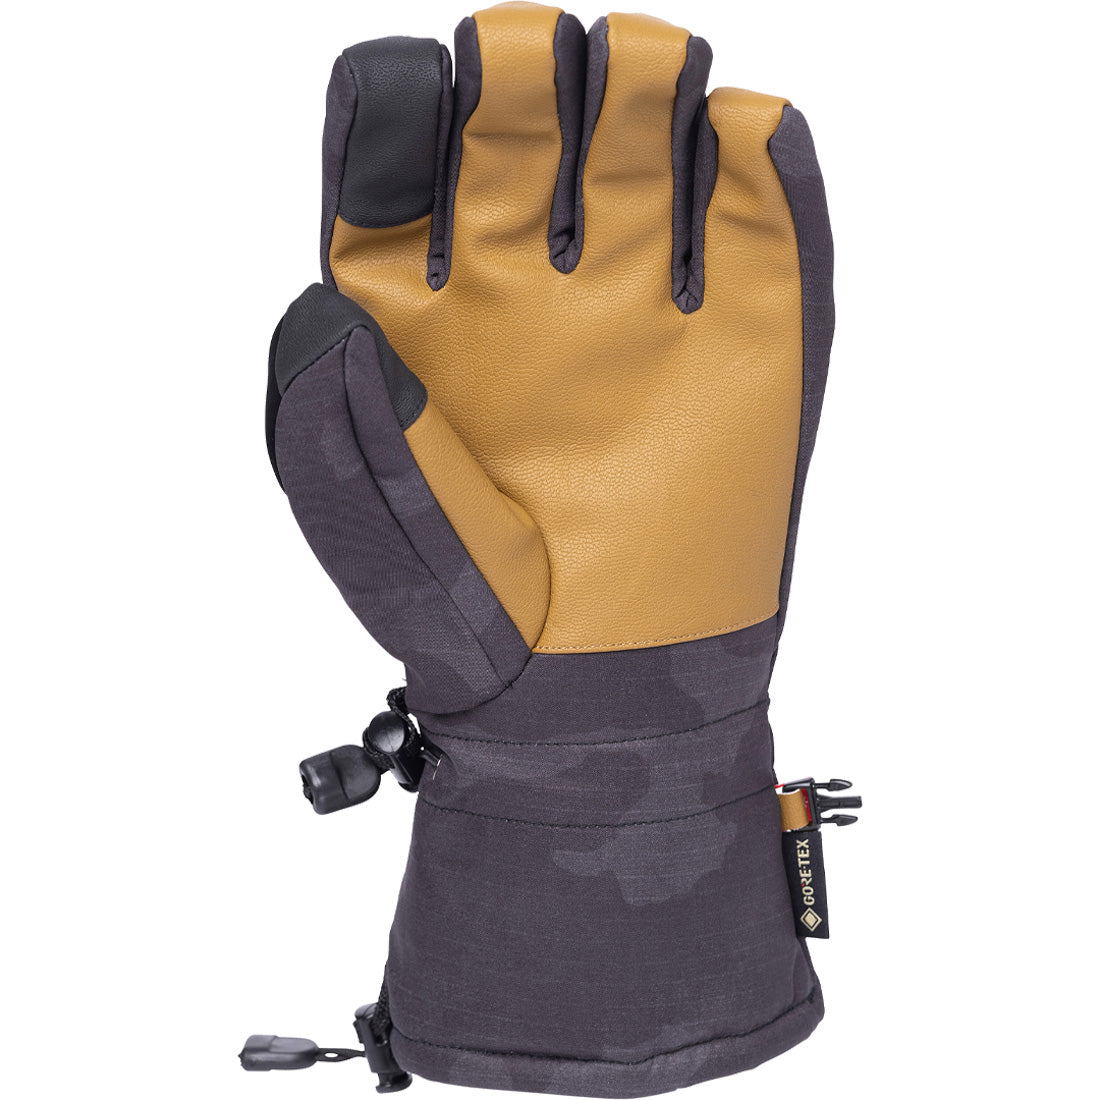 686 GTX Linear Glove - Men's